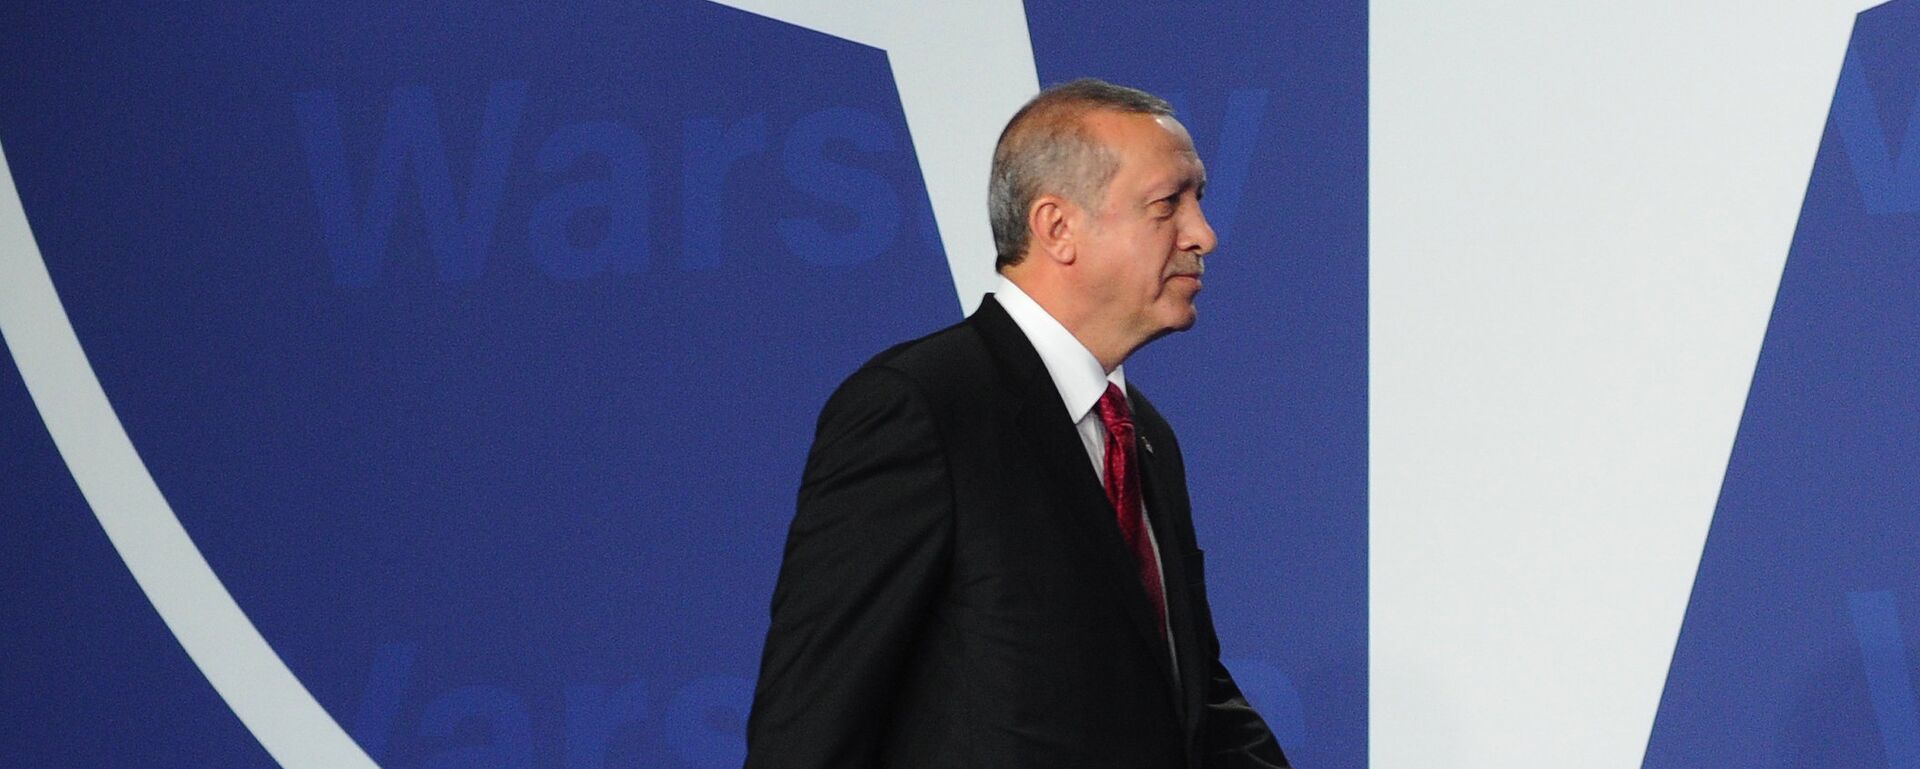 Recep Tayyip Erdogan, presidente de Turquía, en la cumbre de la OTAN en Varsovia (archivo) - Sputnik Mundo, 1920, 29.06.2022